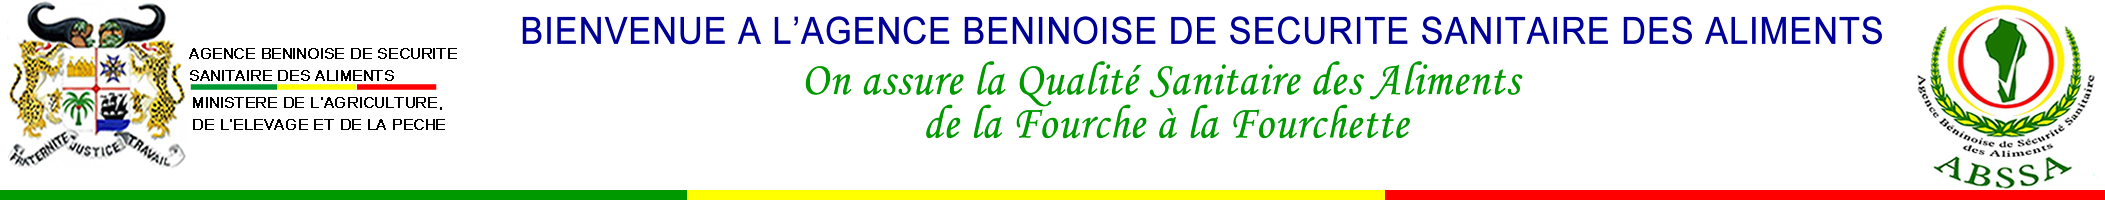 Agence Béninoise de Sécurité Sanitaire des Aliments